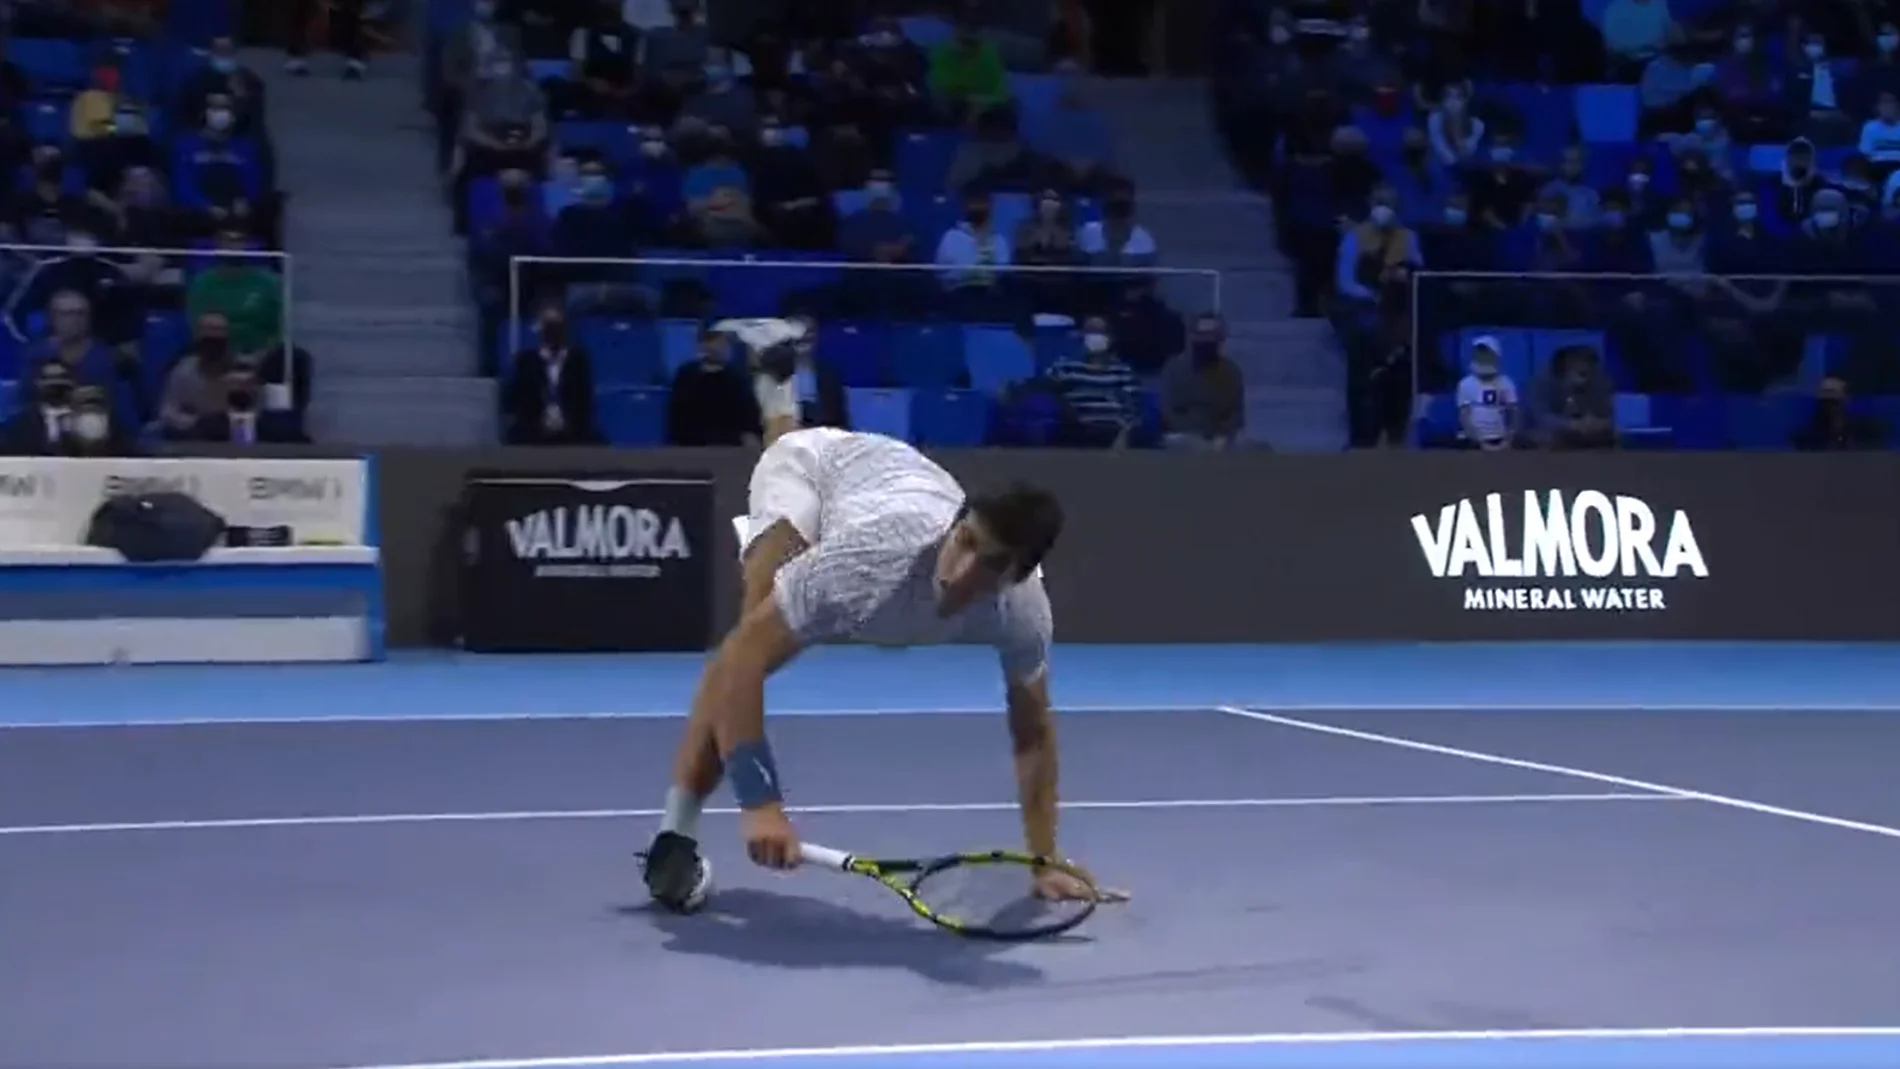 Carlos Alcaraz brilla en la NextGen ATP Finals con el punto del año 